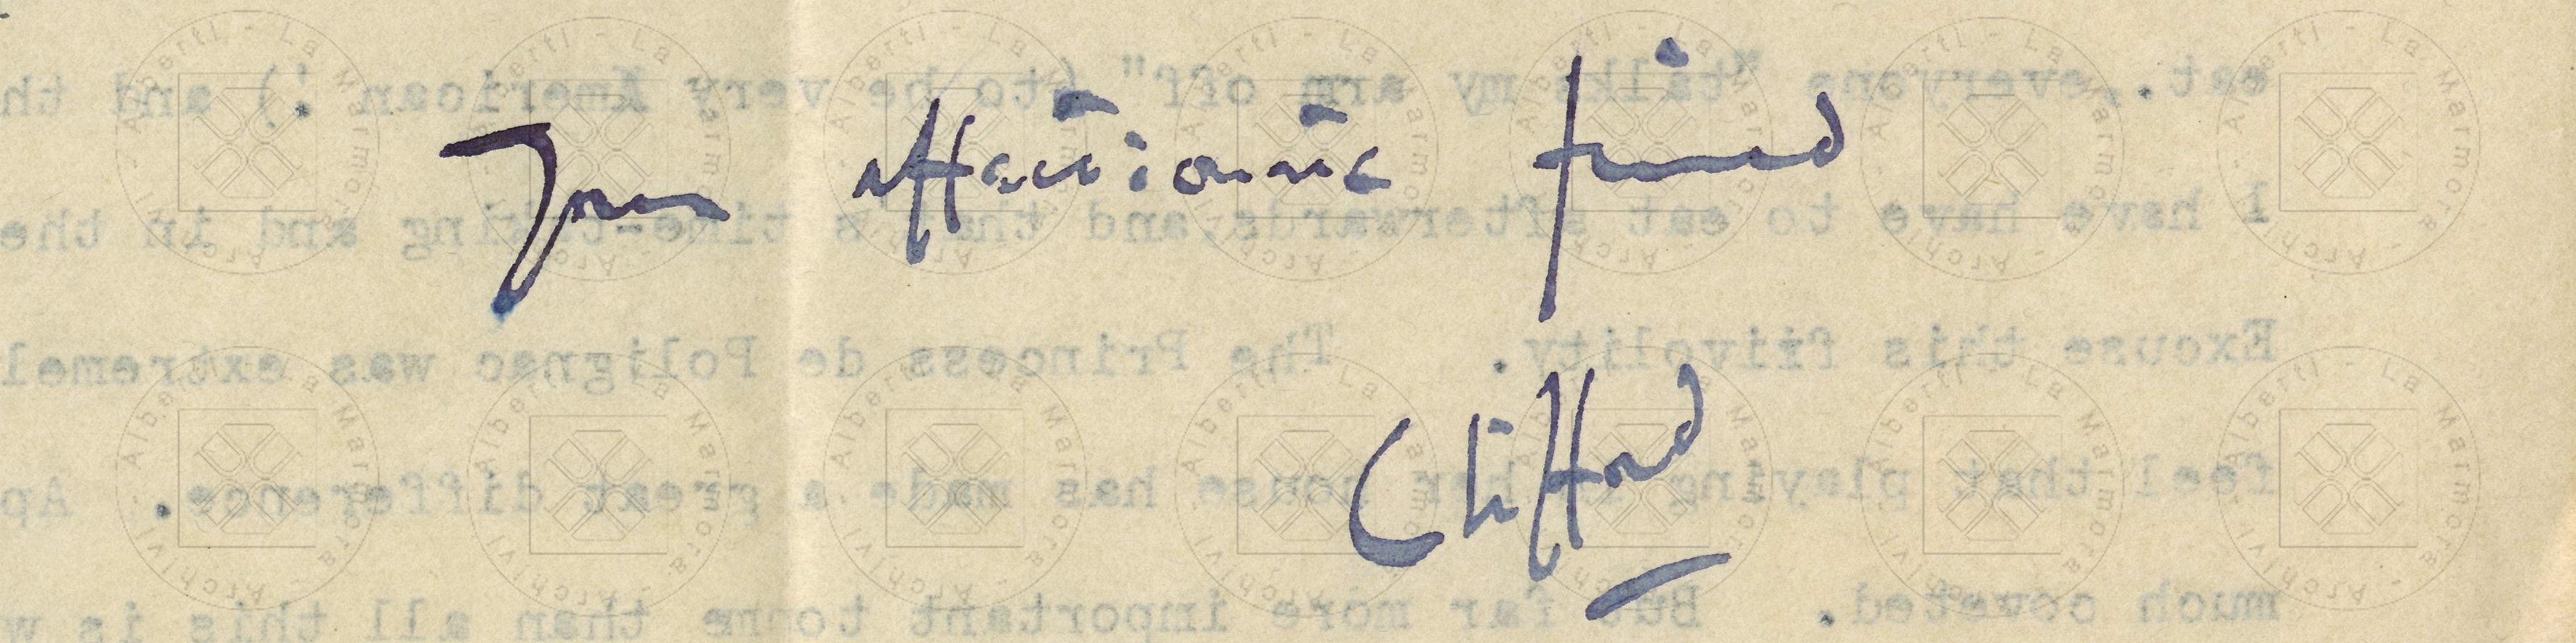 Da una lettera di Clifford Curzon ad Alberti, Parigi, 20 febbraio 1935, firma